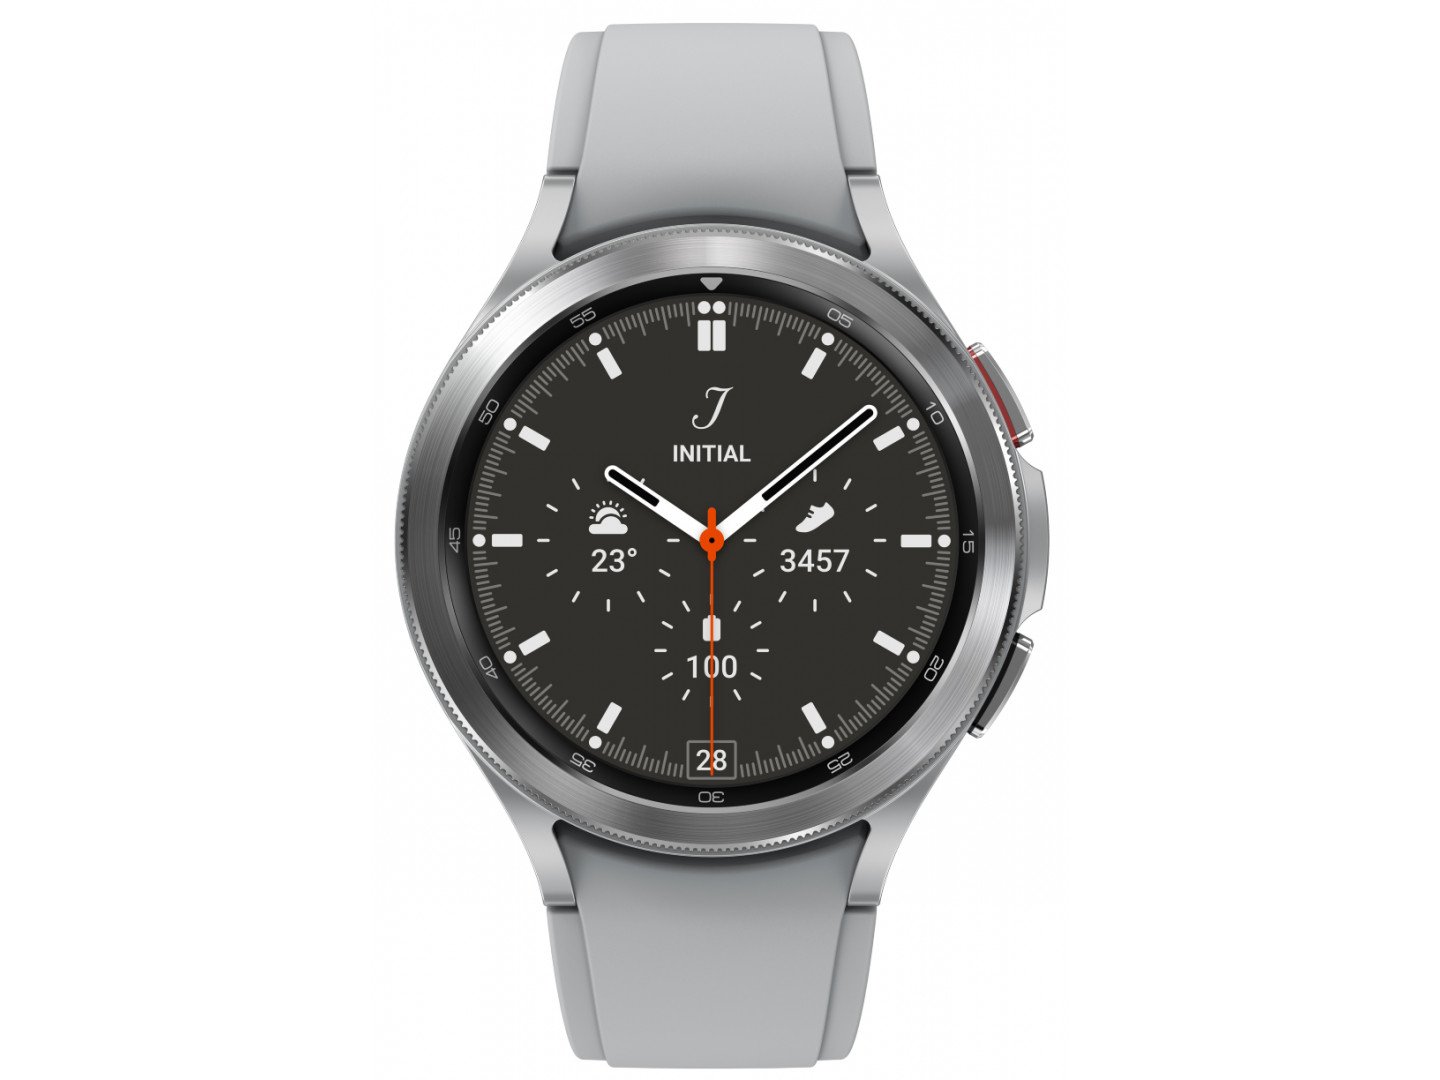 Смарт-часы Samsung Galaxy Watch 4 Classic 46mm Silver (SM-R890NZSASEK)